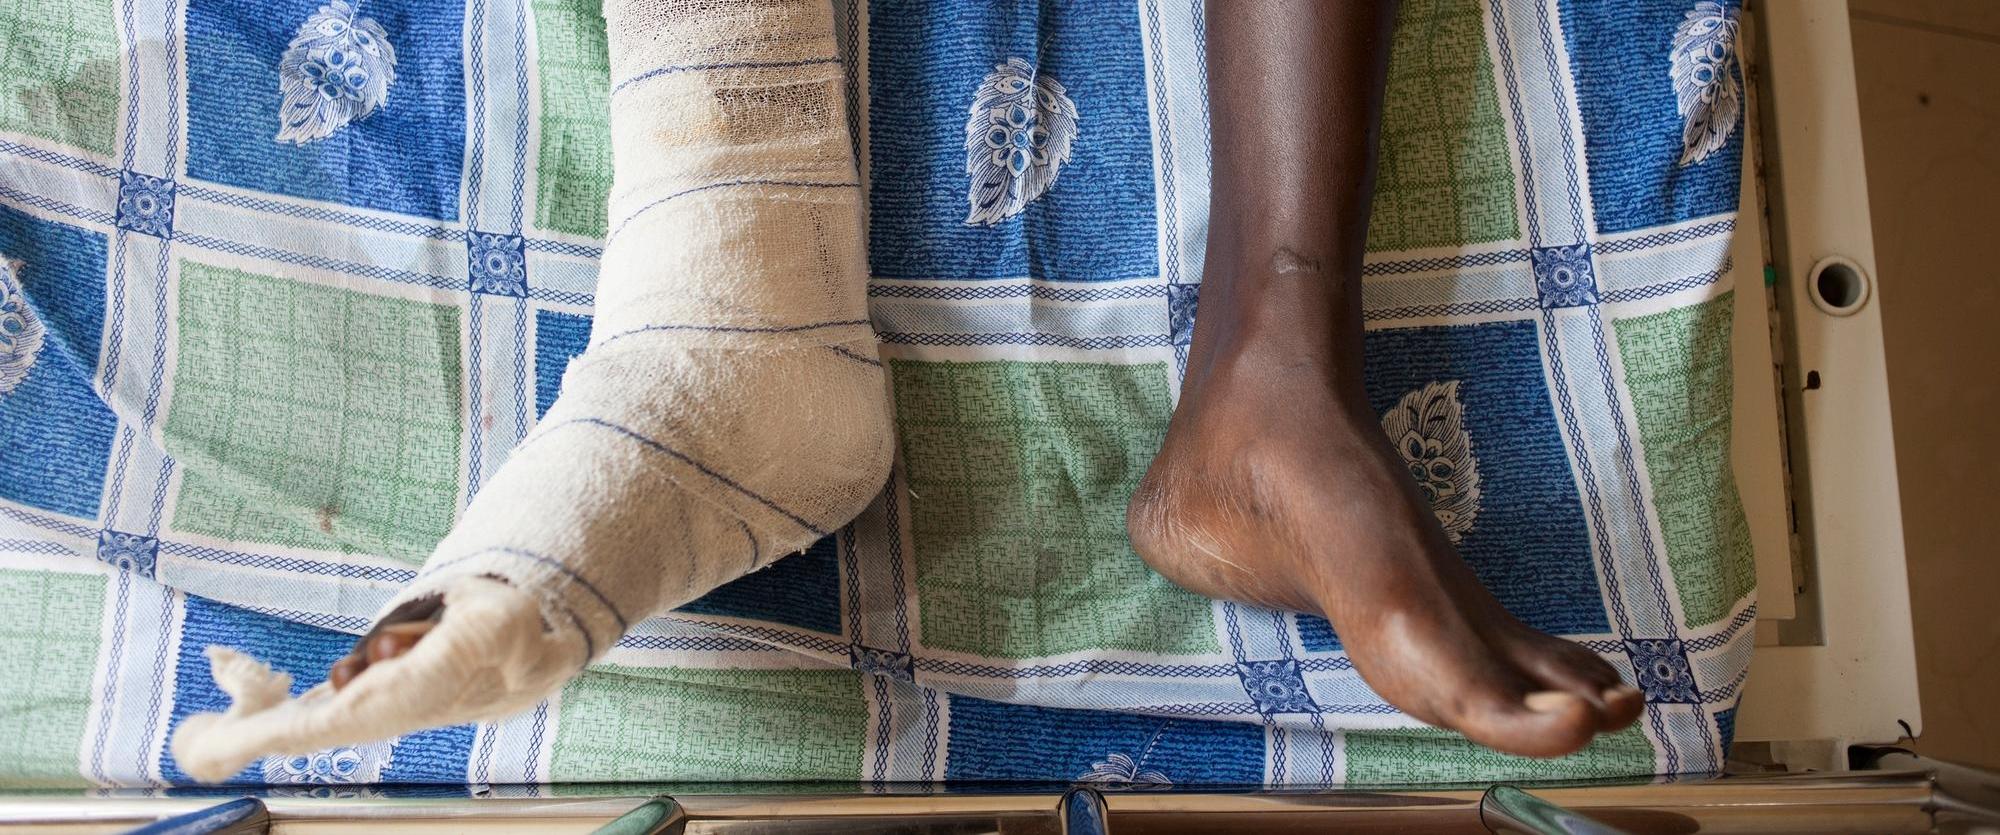 Un patient dans le Centre de traumatologie MSF à Bujumbura, au Burundi. Décembre 2015.